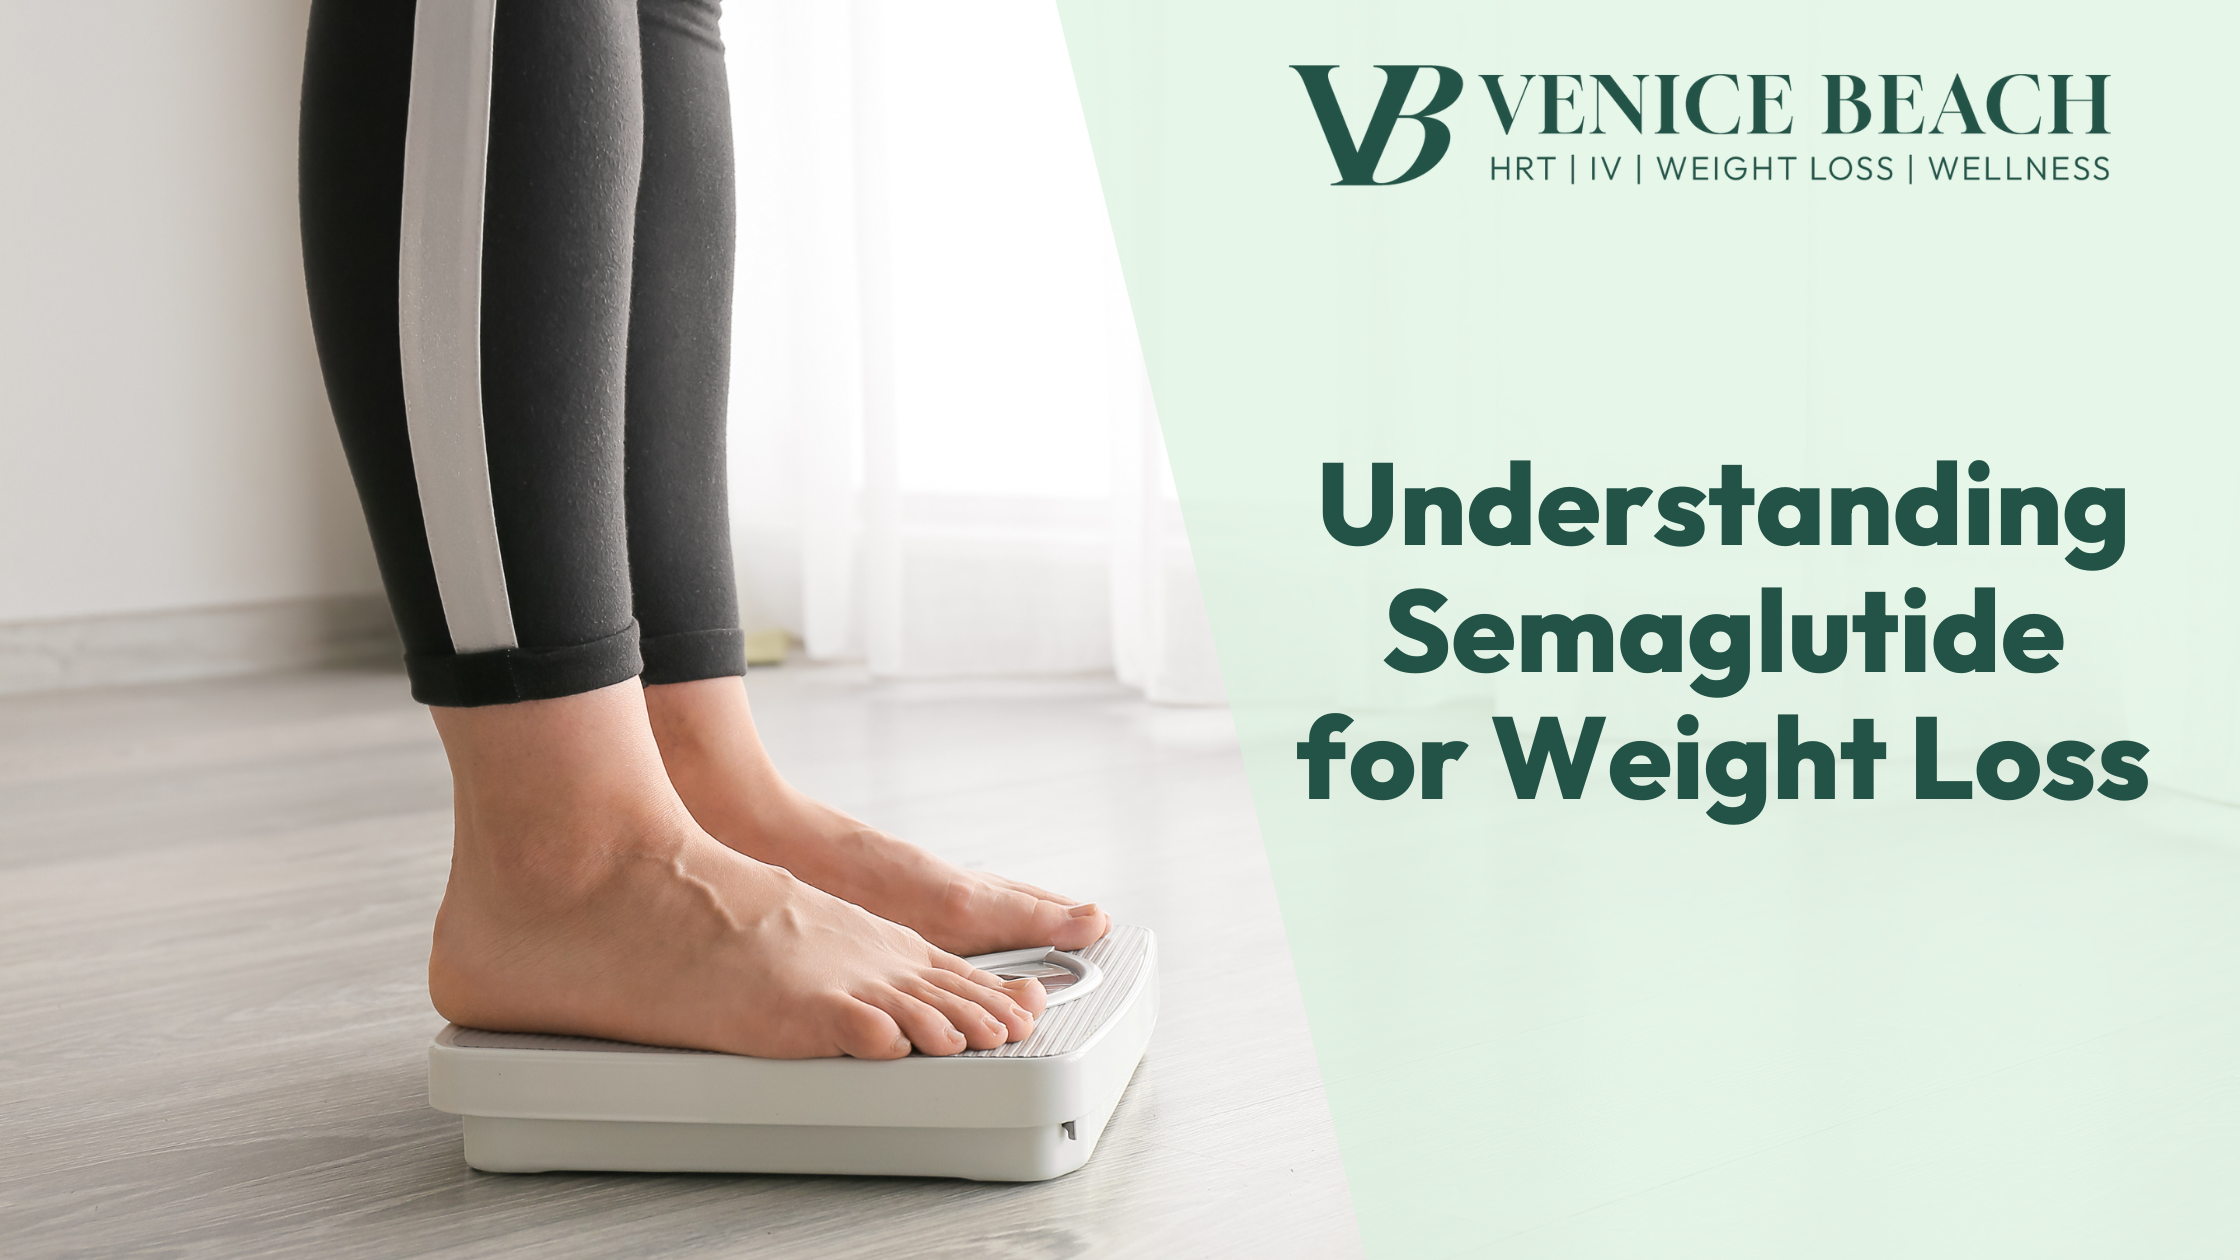 Venice Beach HRT– Understanding Semaglutide for Weight Loss